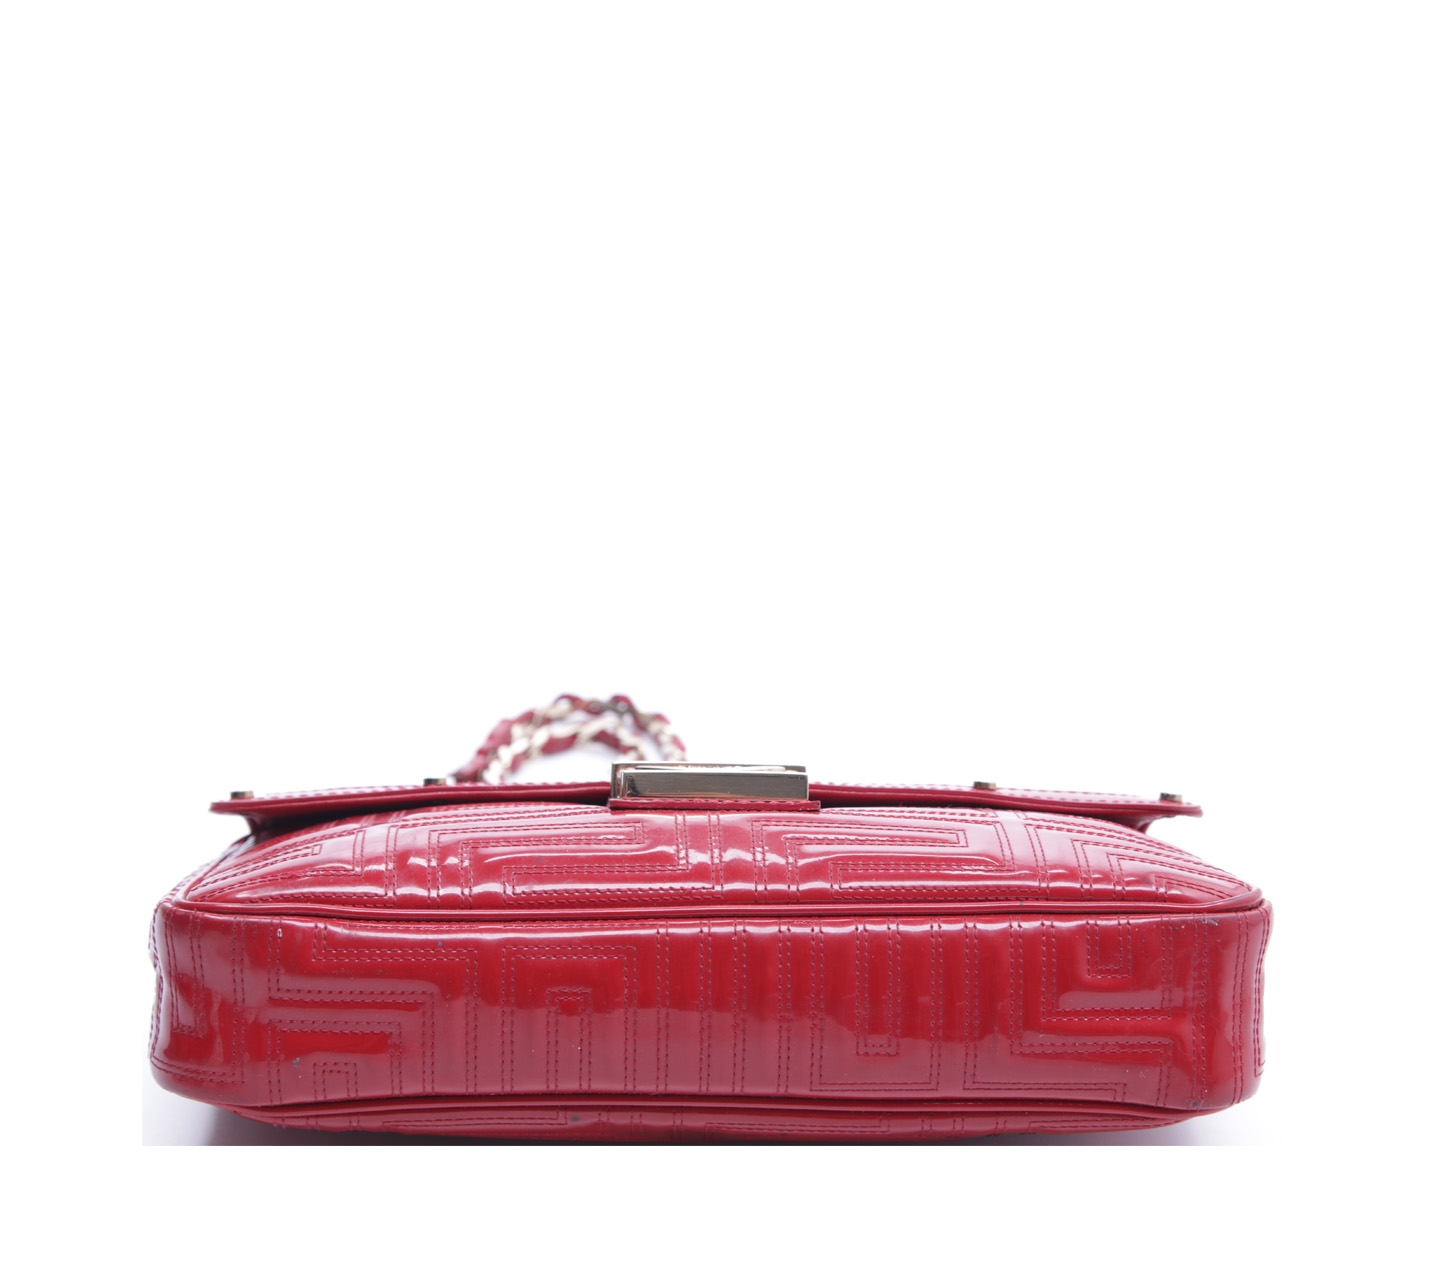 Gianni Versace Red Shoulder Bag